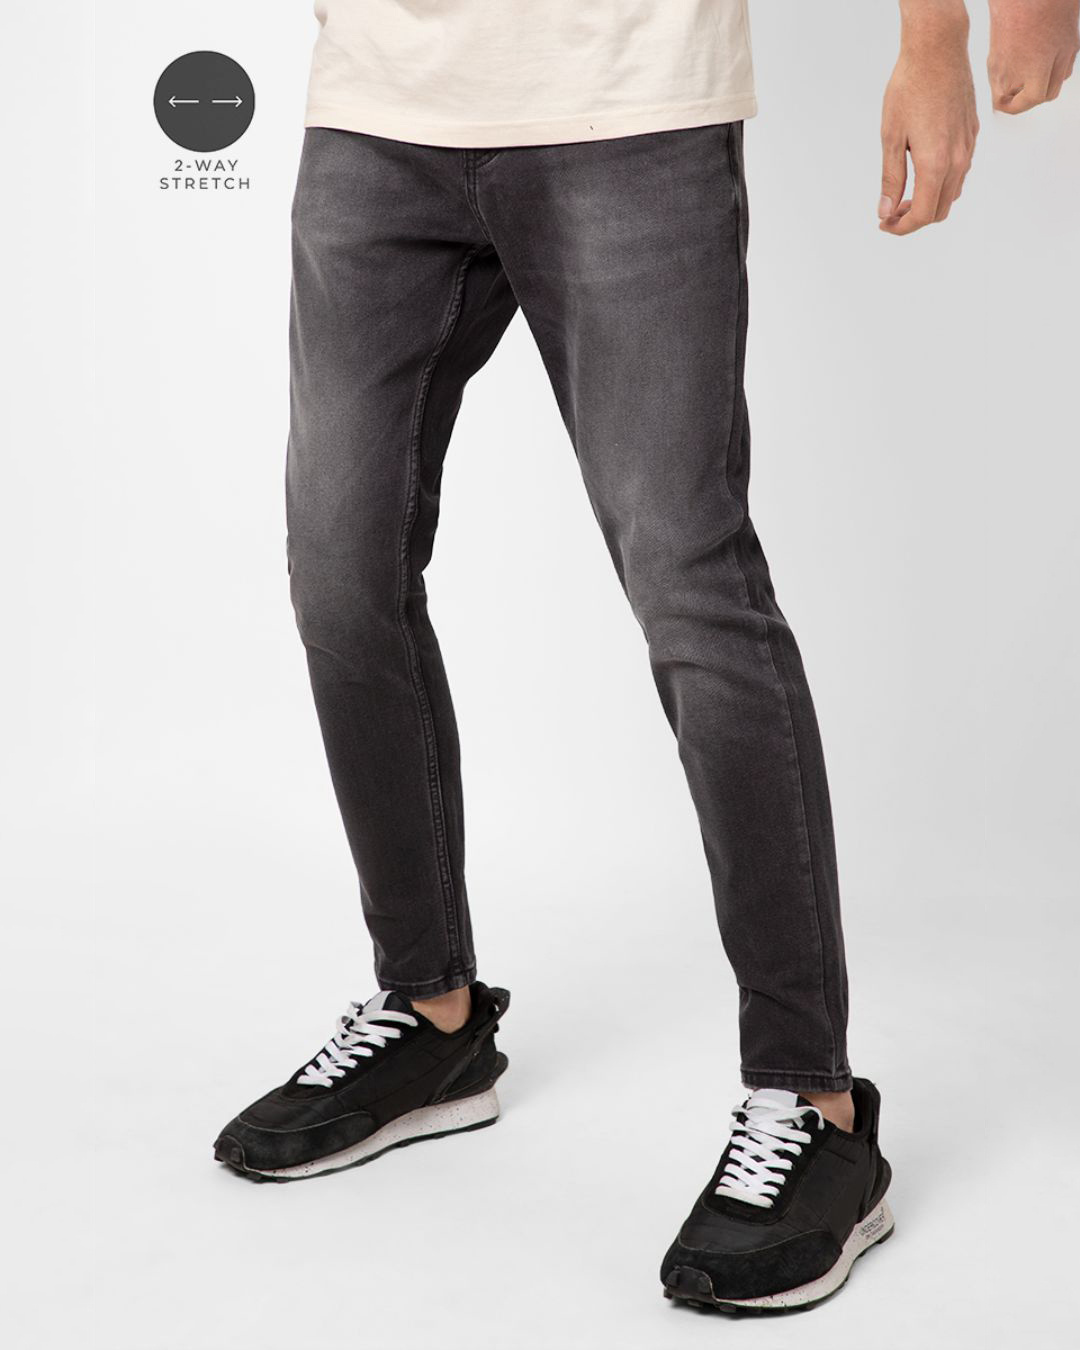 Buy Men's Black Skinny Fit Jeans for Men Black Online at Bewakoof